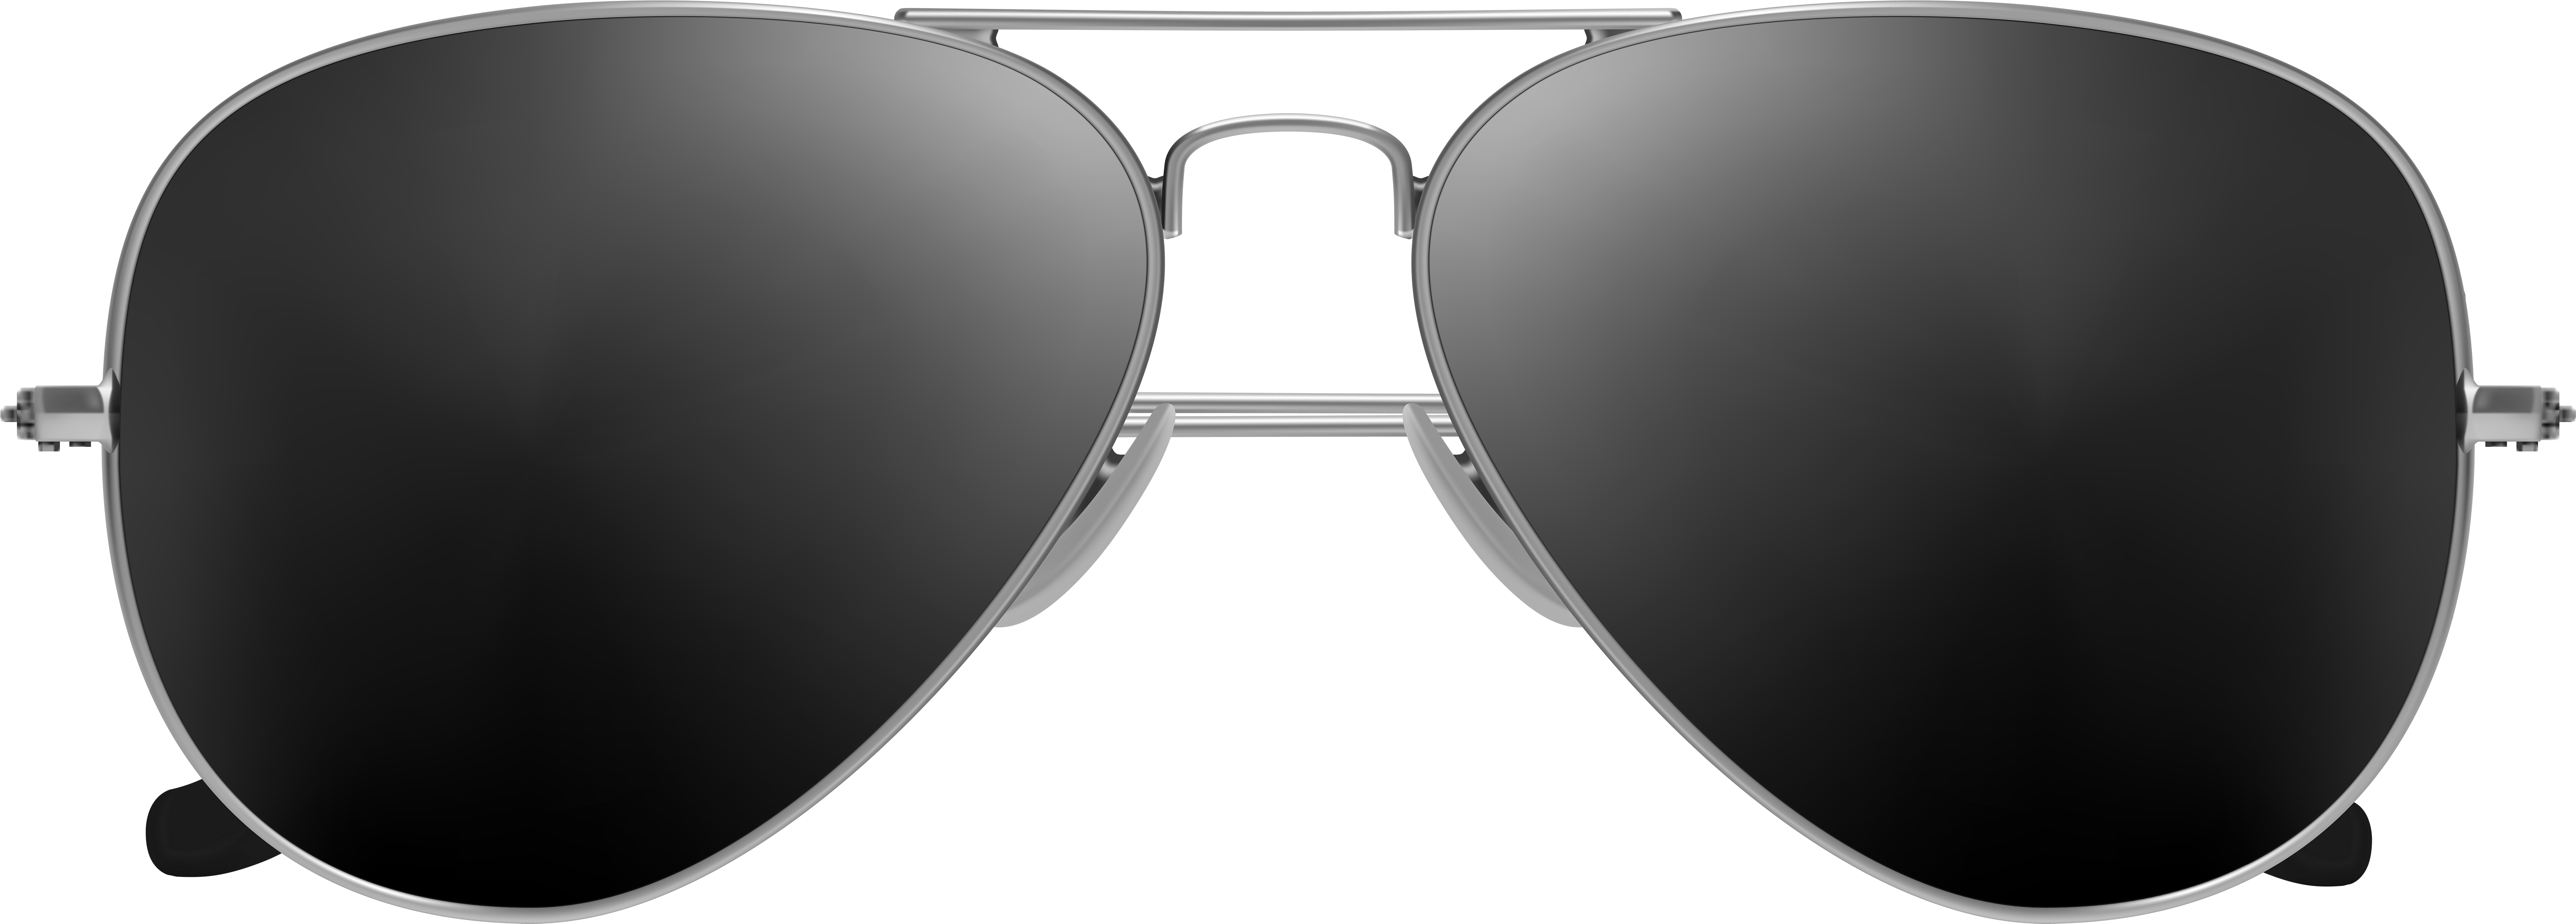 Aviator Sunglasses Png | estudioespositoymiguel.com.ar